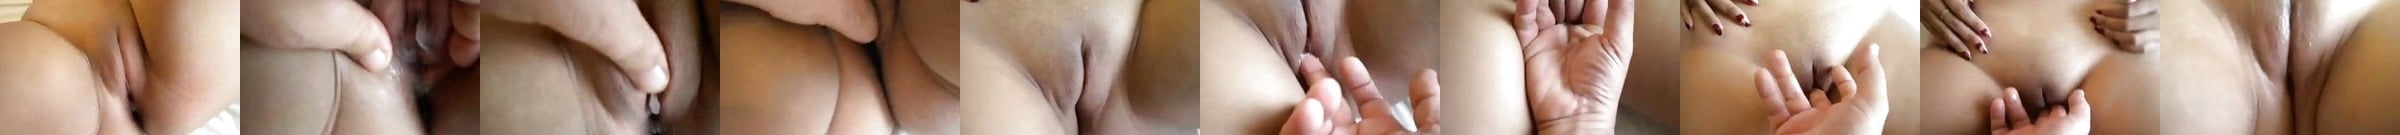 Featured Xxapple E Korean Big Ass Porn Videos Xhamster